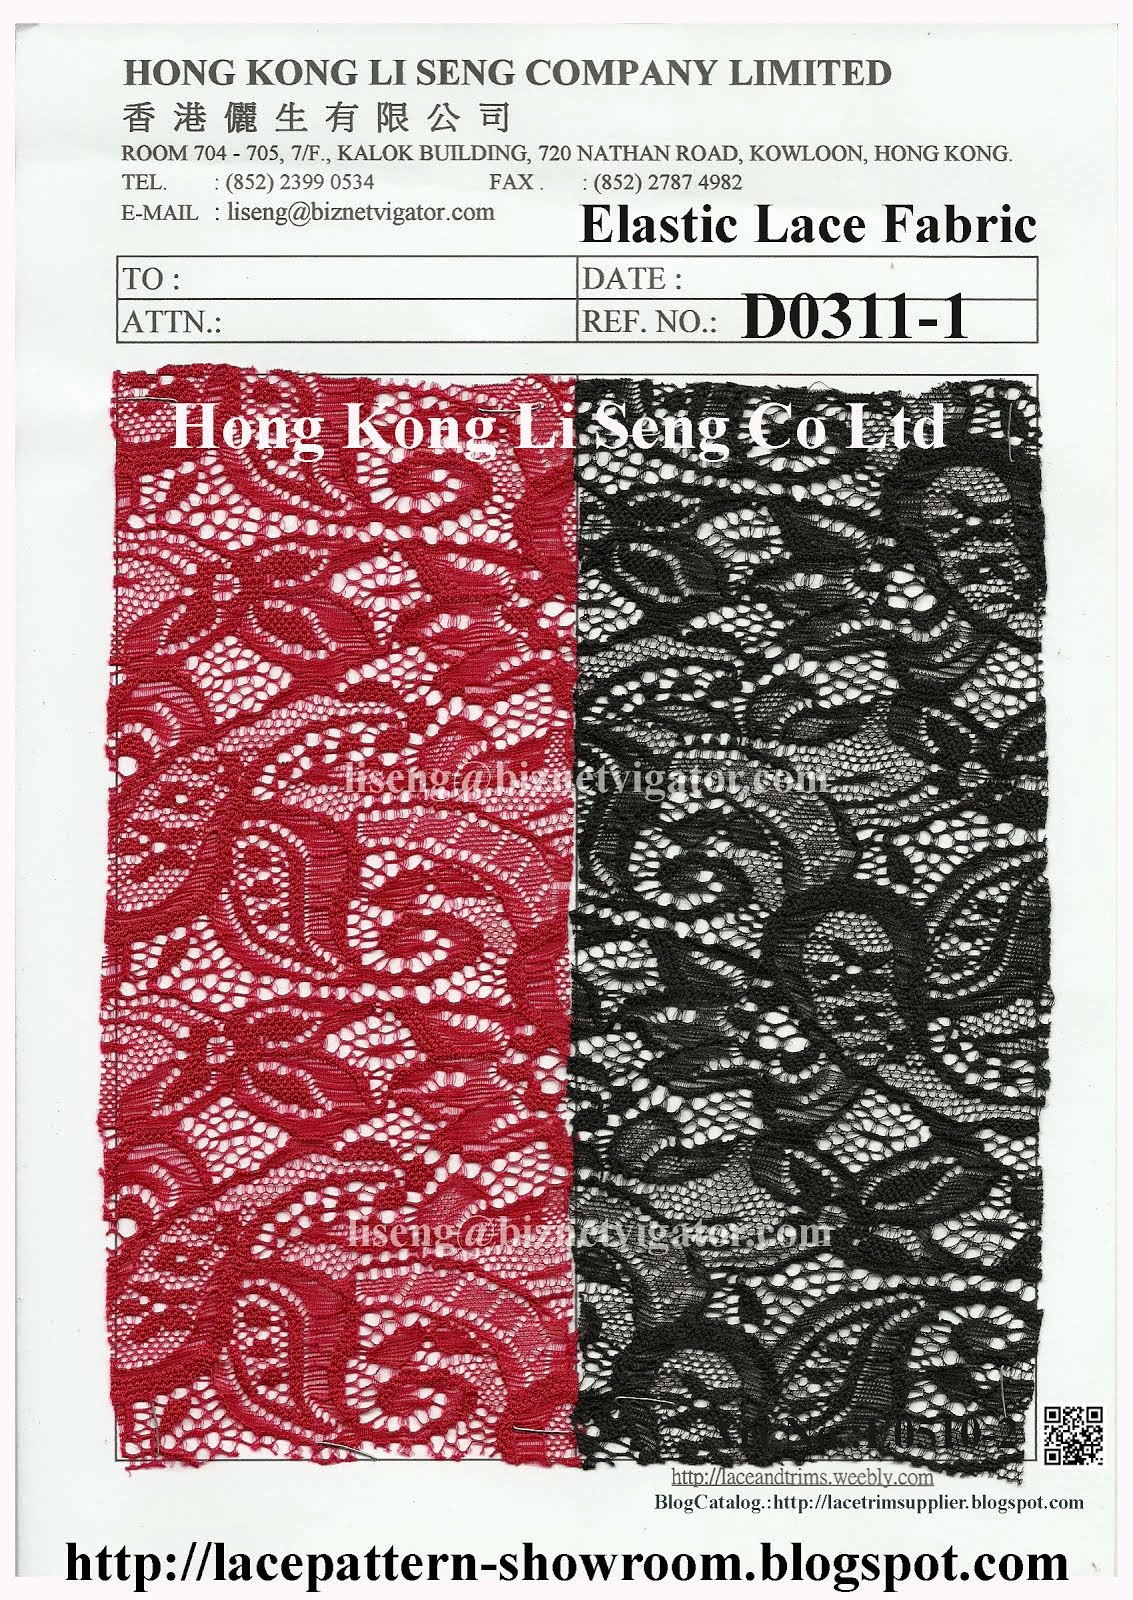 Elastic Lace Fabric Factory - Hong Kong Li Seng Co Ltd